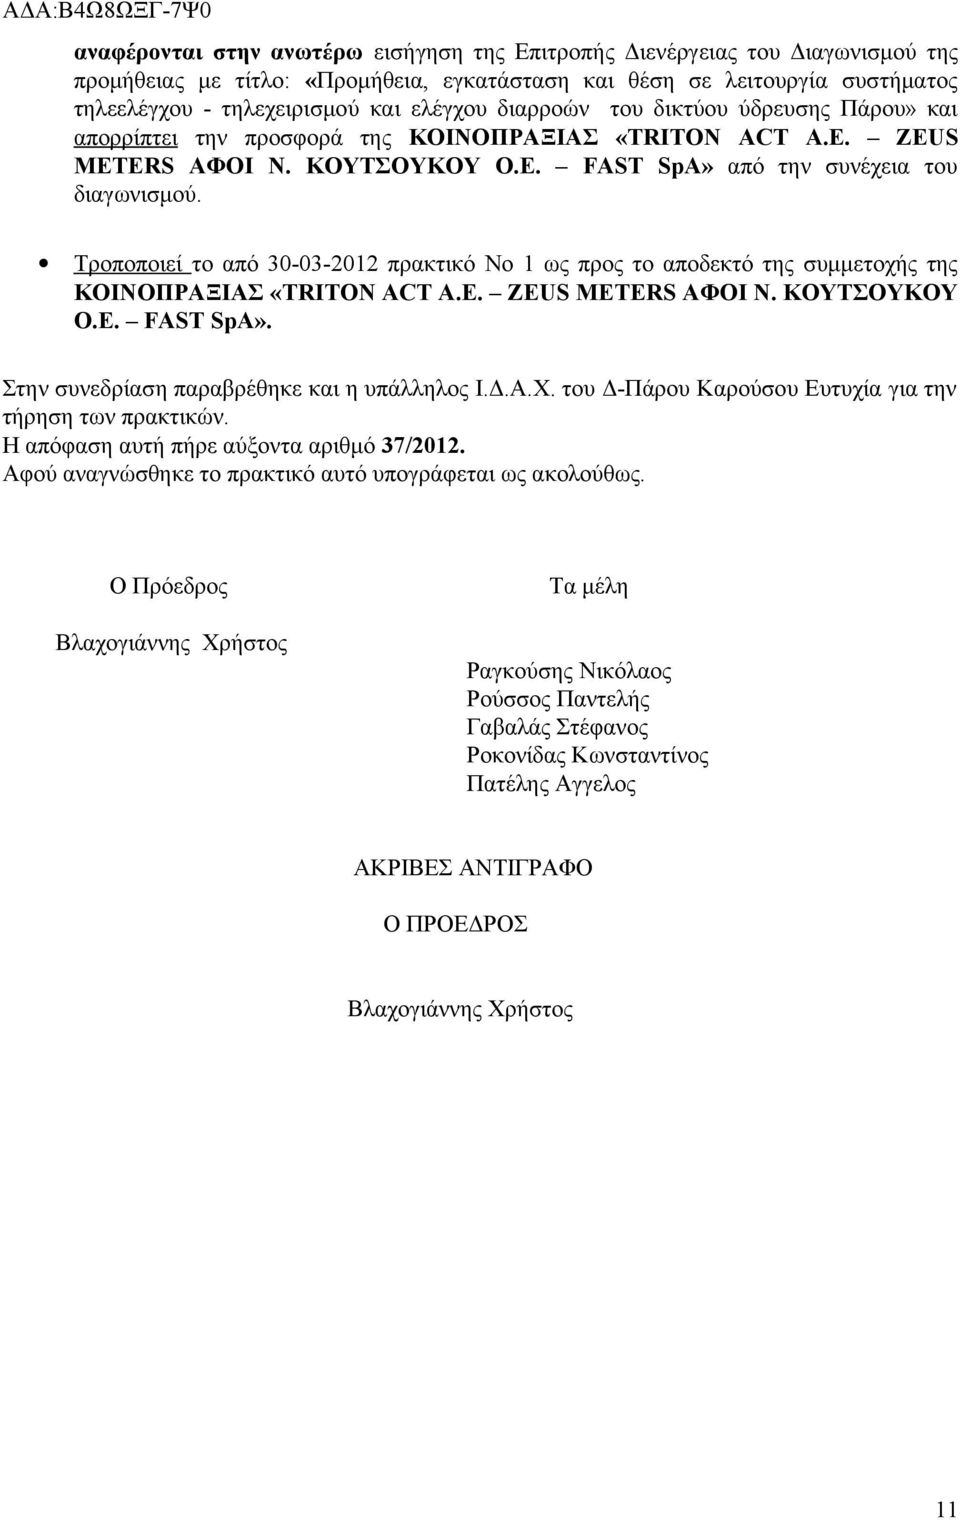 Τροποποιεί το από 30-03-2012 πρακτικό Νο 1 ως προς το αποδεκτό της συμμετοχής της ΚΟΙΝΟΠΡΑΞΙΑΣ «TRITON ACT Α.Ε. ZEUS METERS ΑΦΟΙ Ν. ΚΟΥΤΣΟΥΚΟΥ Ο.Ε. FAST SpA».